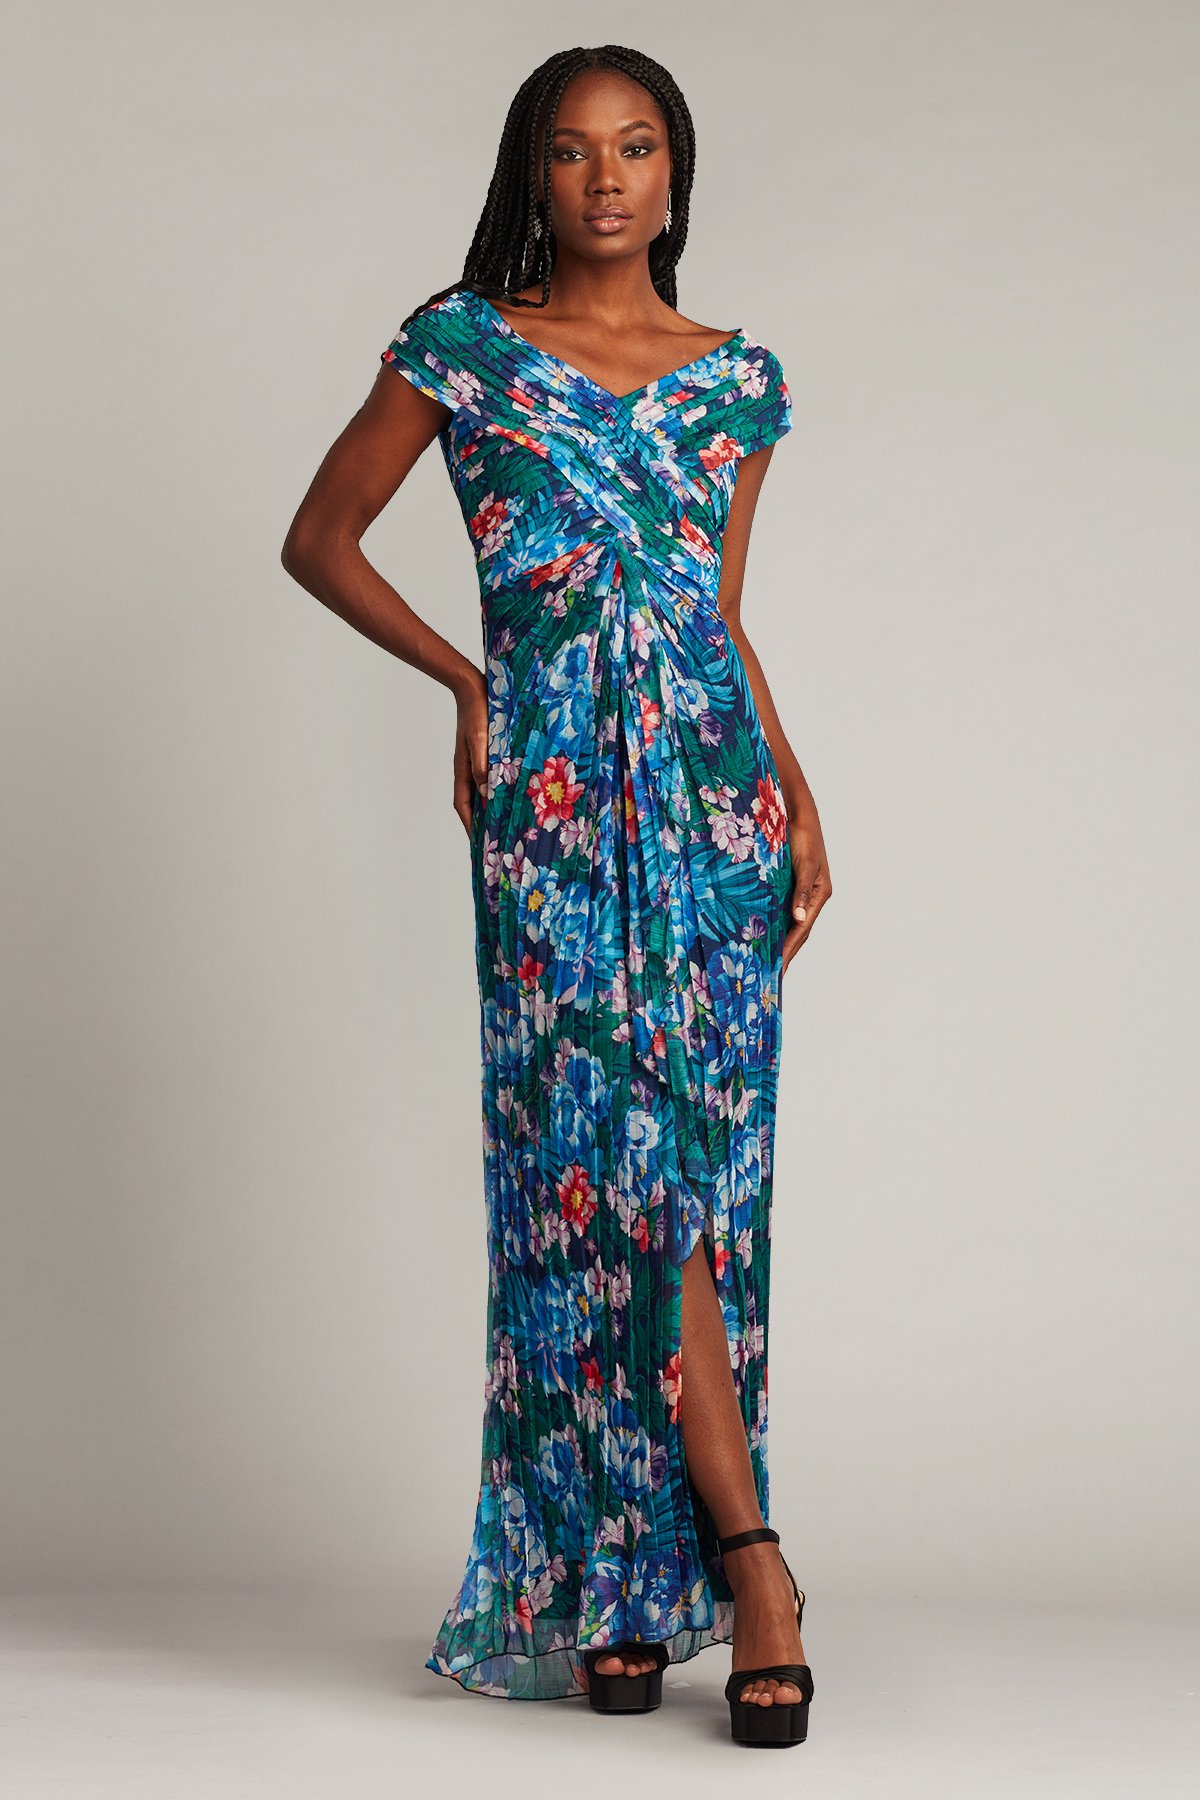 Black Floral Dress - Floral Print Dress - Surplice Maxi Dress - Lulus